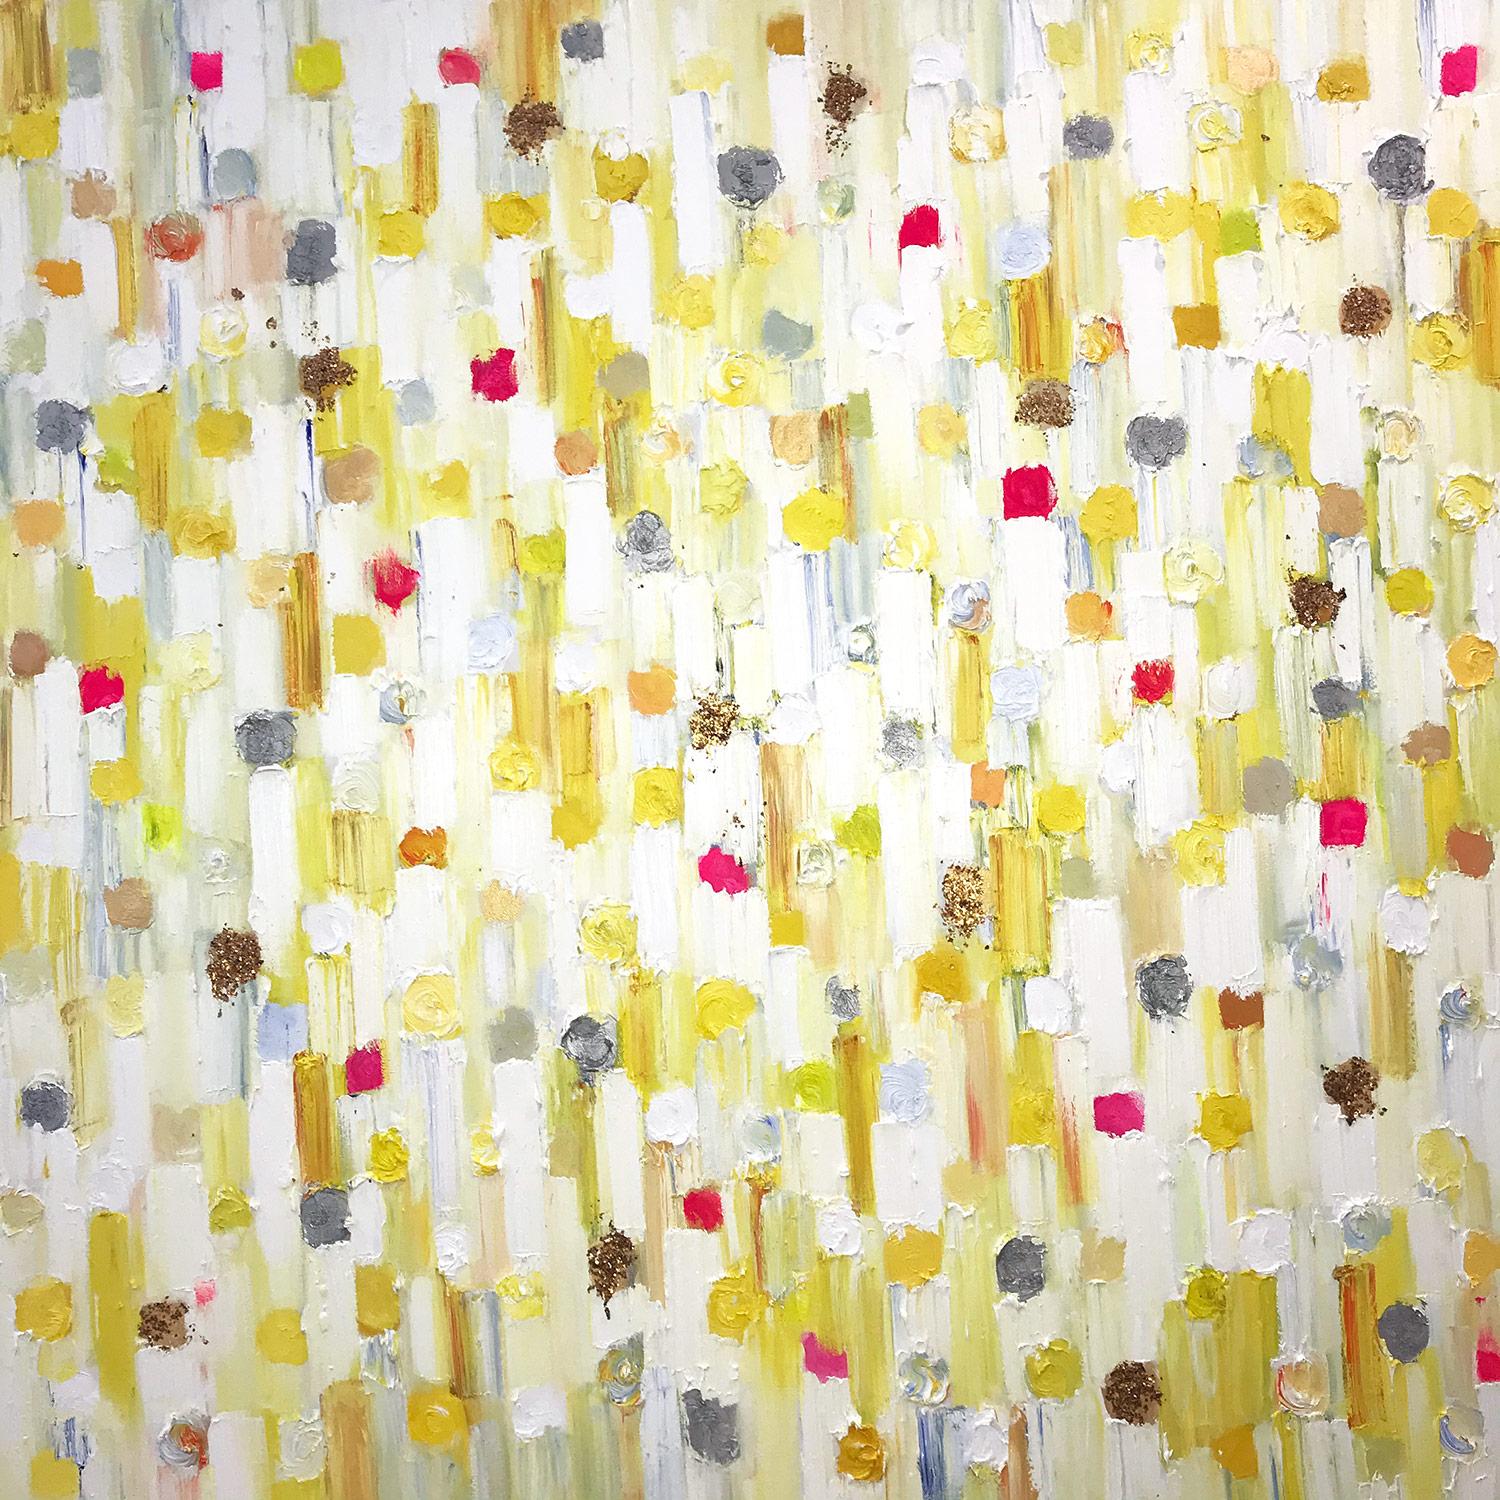 Abstract Painting Cindy Shaoul - "Dripping Dots - Monaco Sunrise" - Peinture à l'huile abstraite contemporaine sur toile